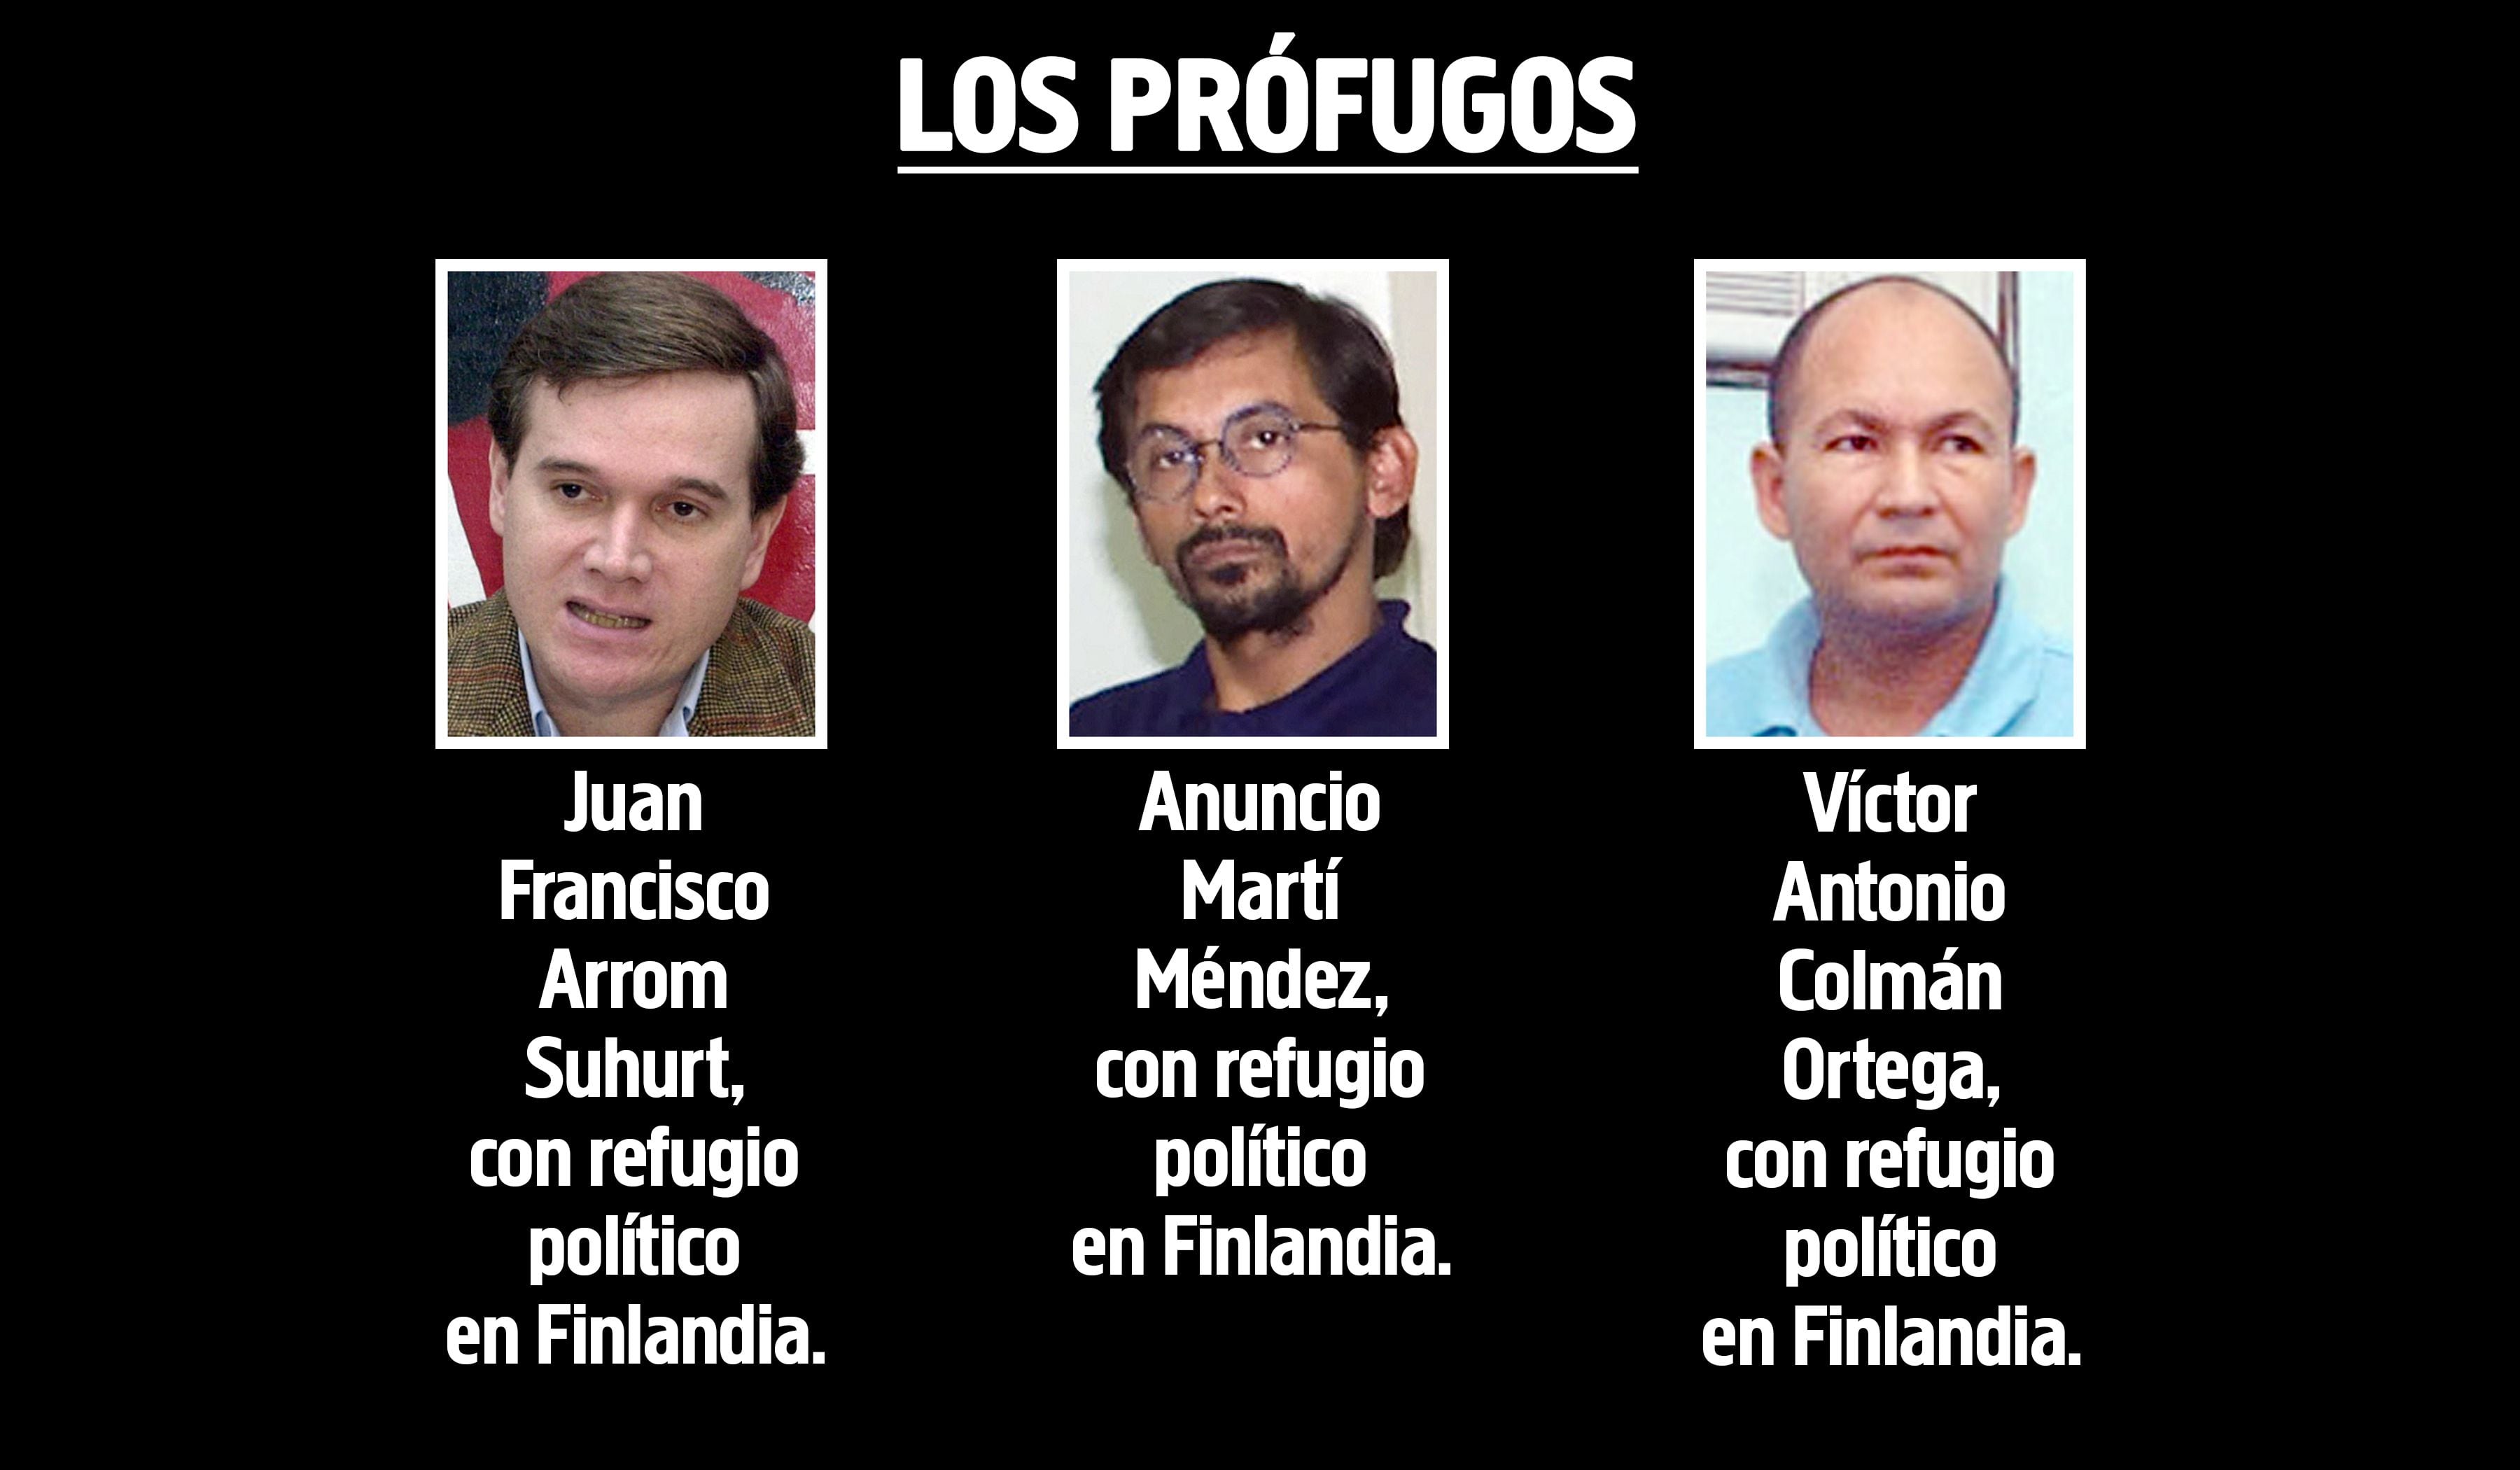 Juan Francisco Arrom Suhurt, Anuncio Martí Méndez Y Víctor Antonio Colmán Ortega, prófugos por el caso Debernardi, pero con refugio político en Finlandia.